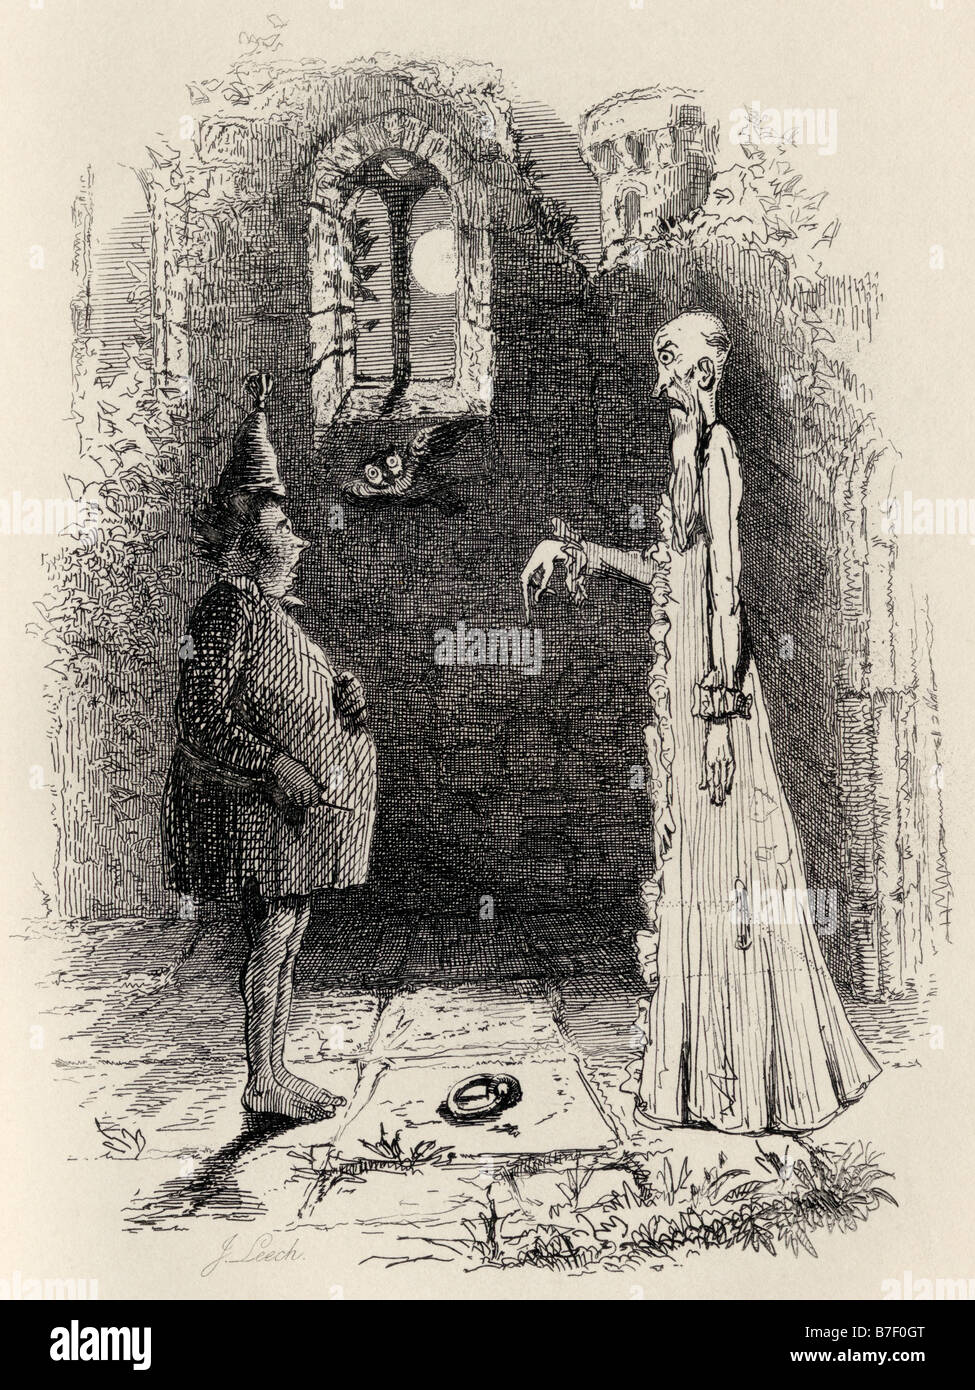 Le fantôme. Illustration de John Leech des légendes d'Ingoldsby publiée par Richard Bentley son, 1887. Banque D'Images